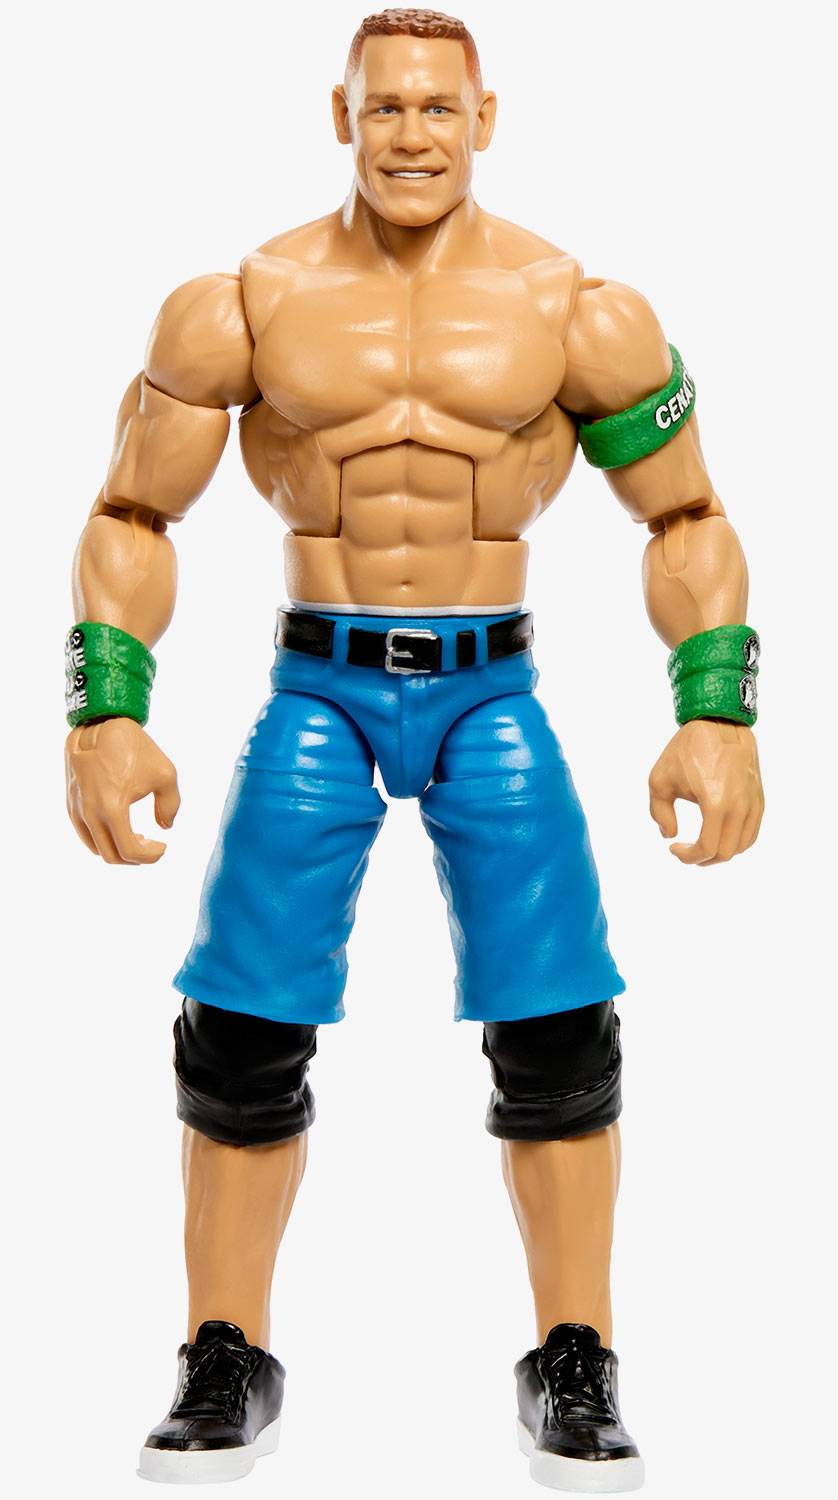 John Cena WWE WrestleMania 40 Elite Collection Series